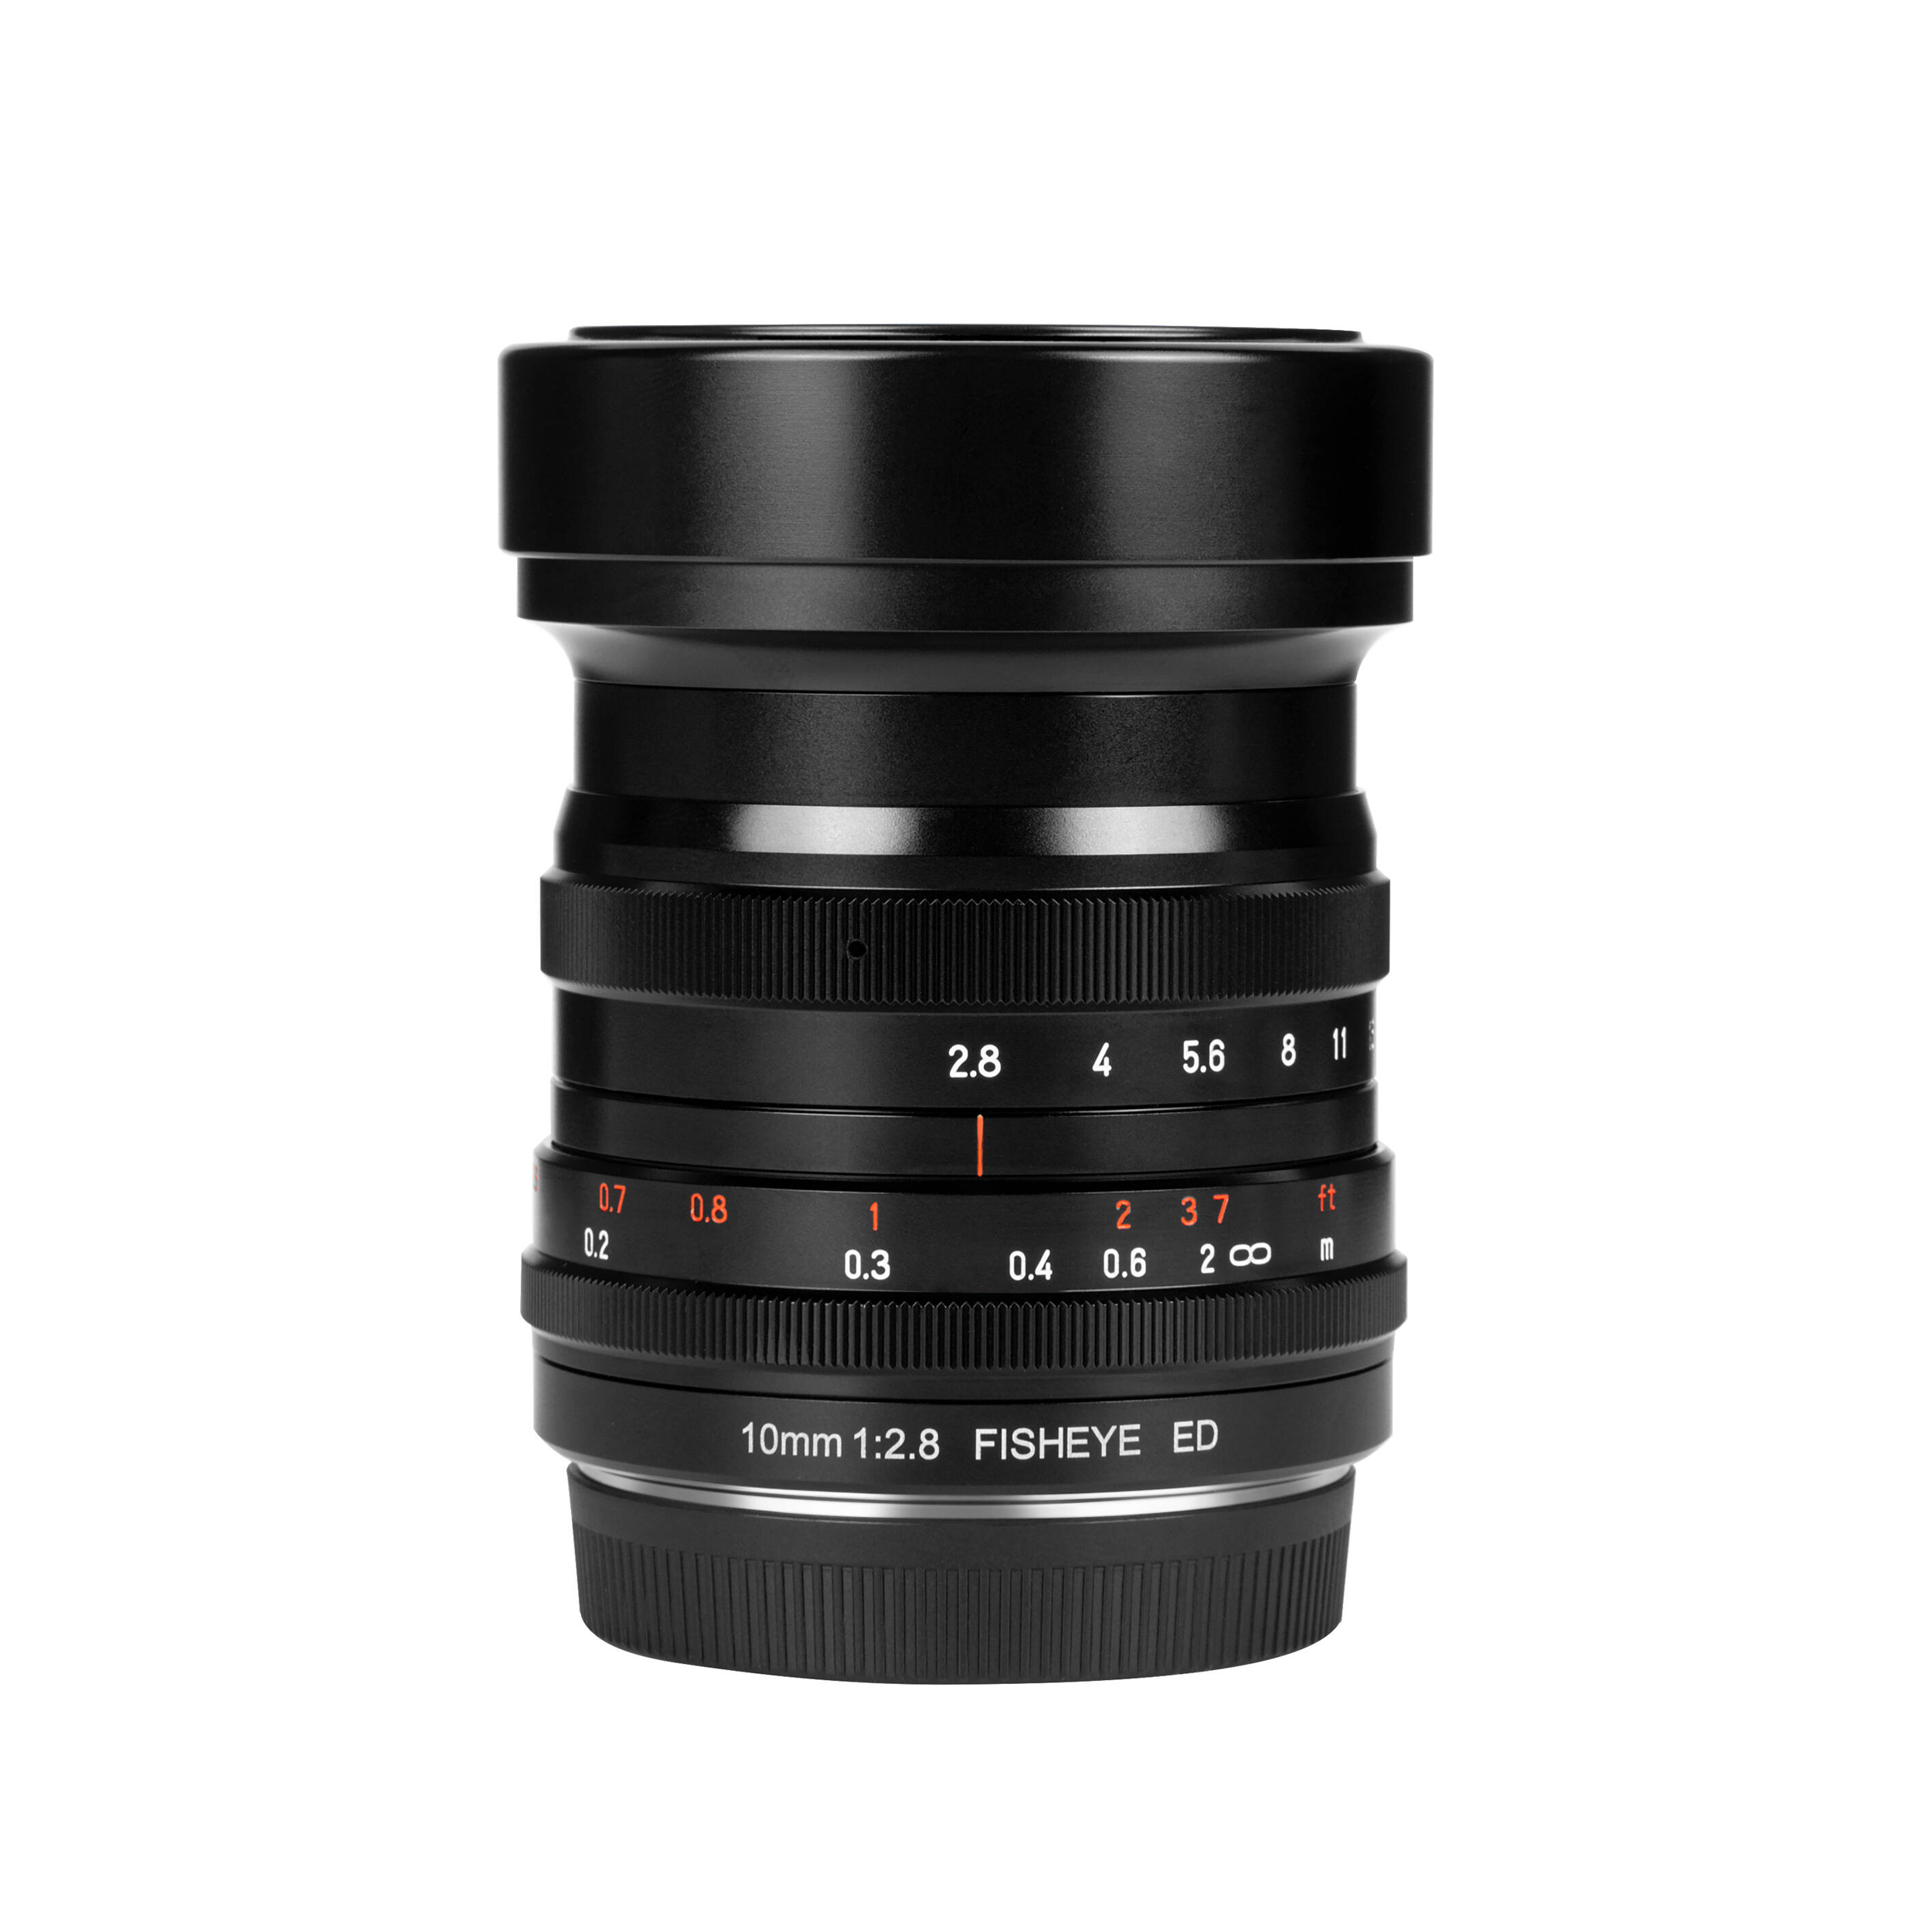 7artisans Photoelectric 10mm f/2.8 Fisheye Lens for Canon RF Mount